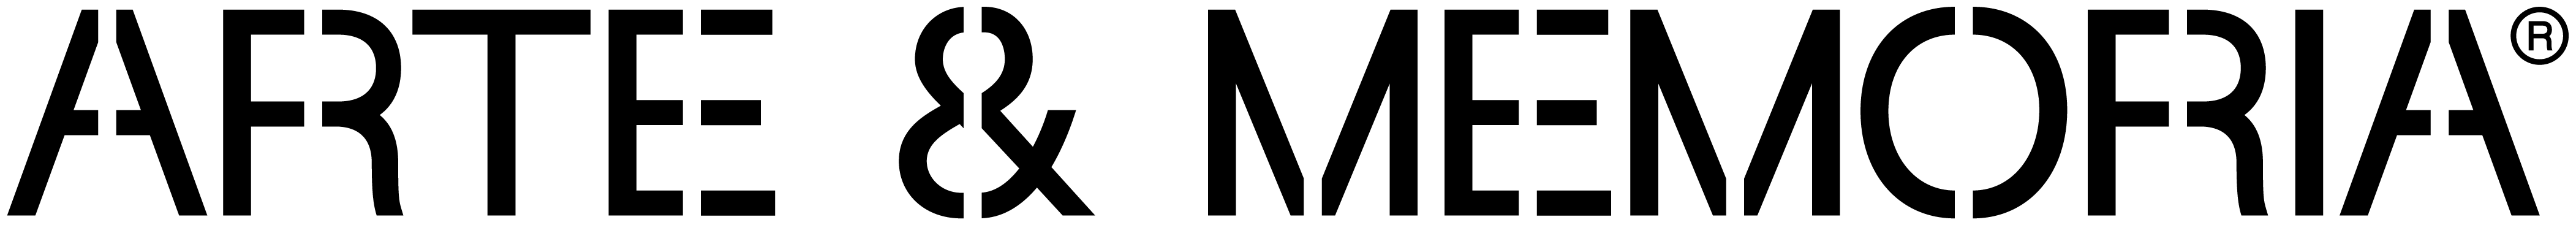 arteymemoria logo R